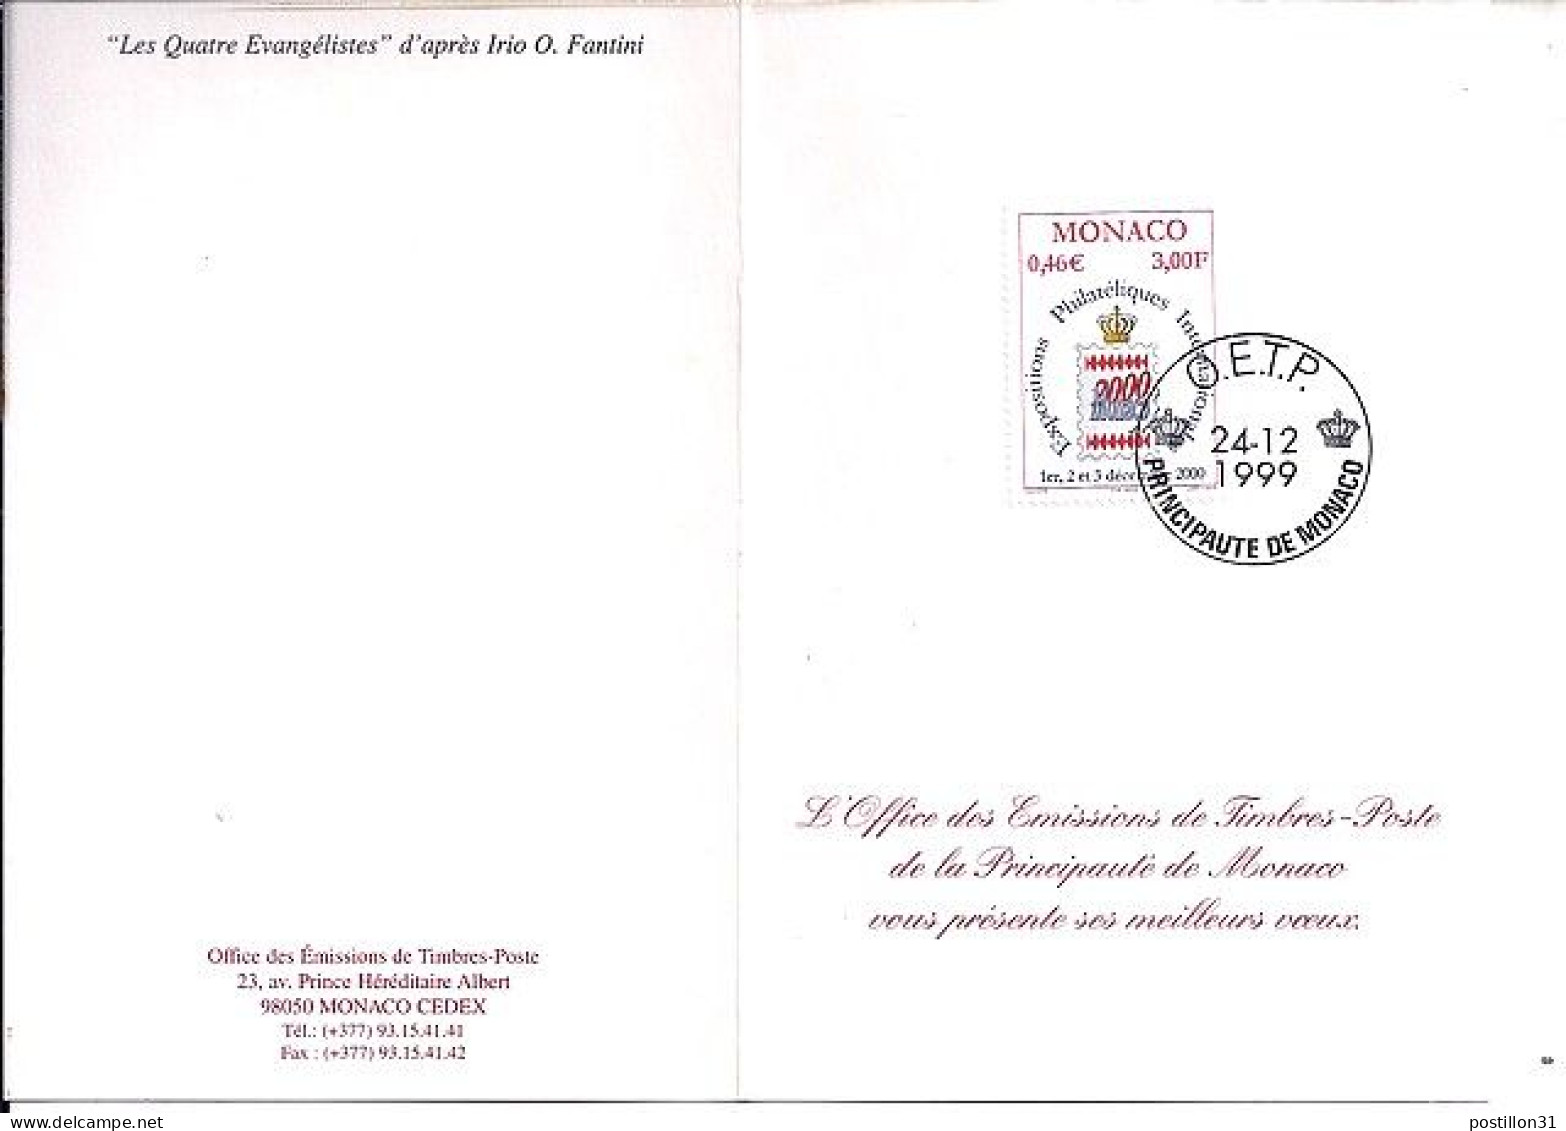 MONACO N° 2229 S/L. DE OETP/24.12.99   - Briefe U. Dokumente